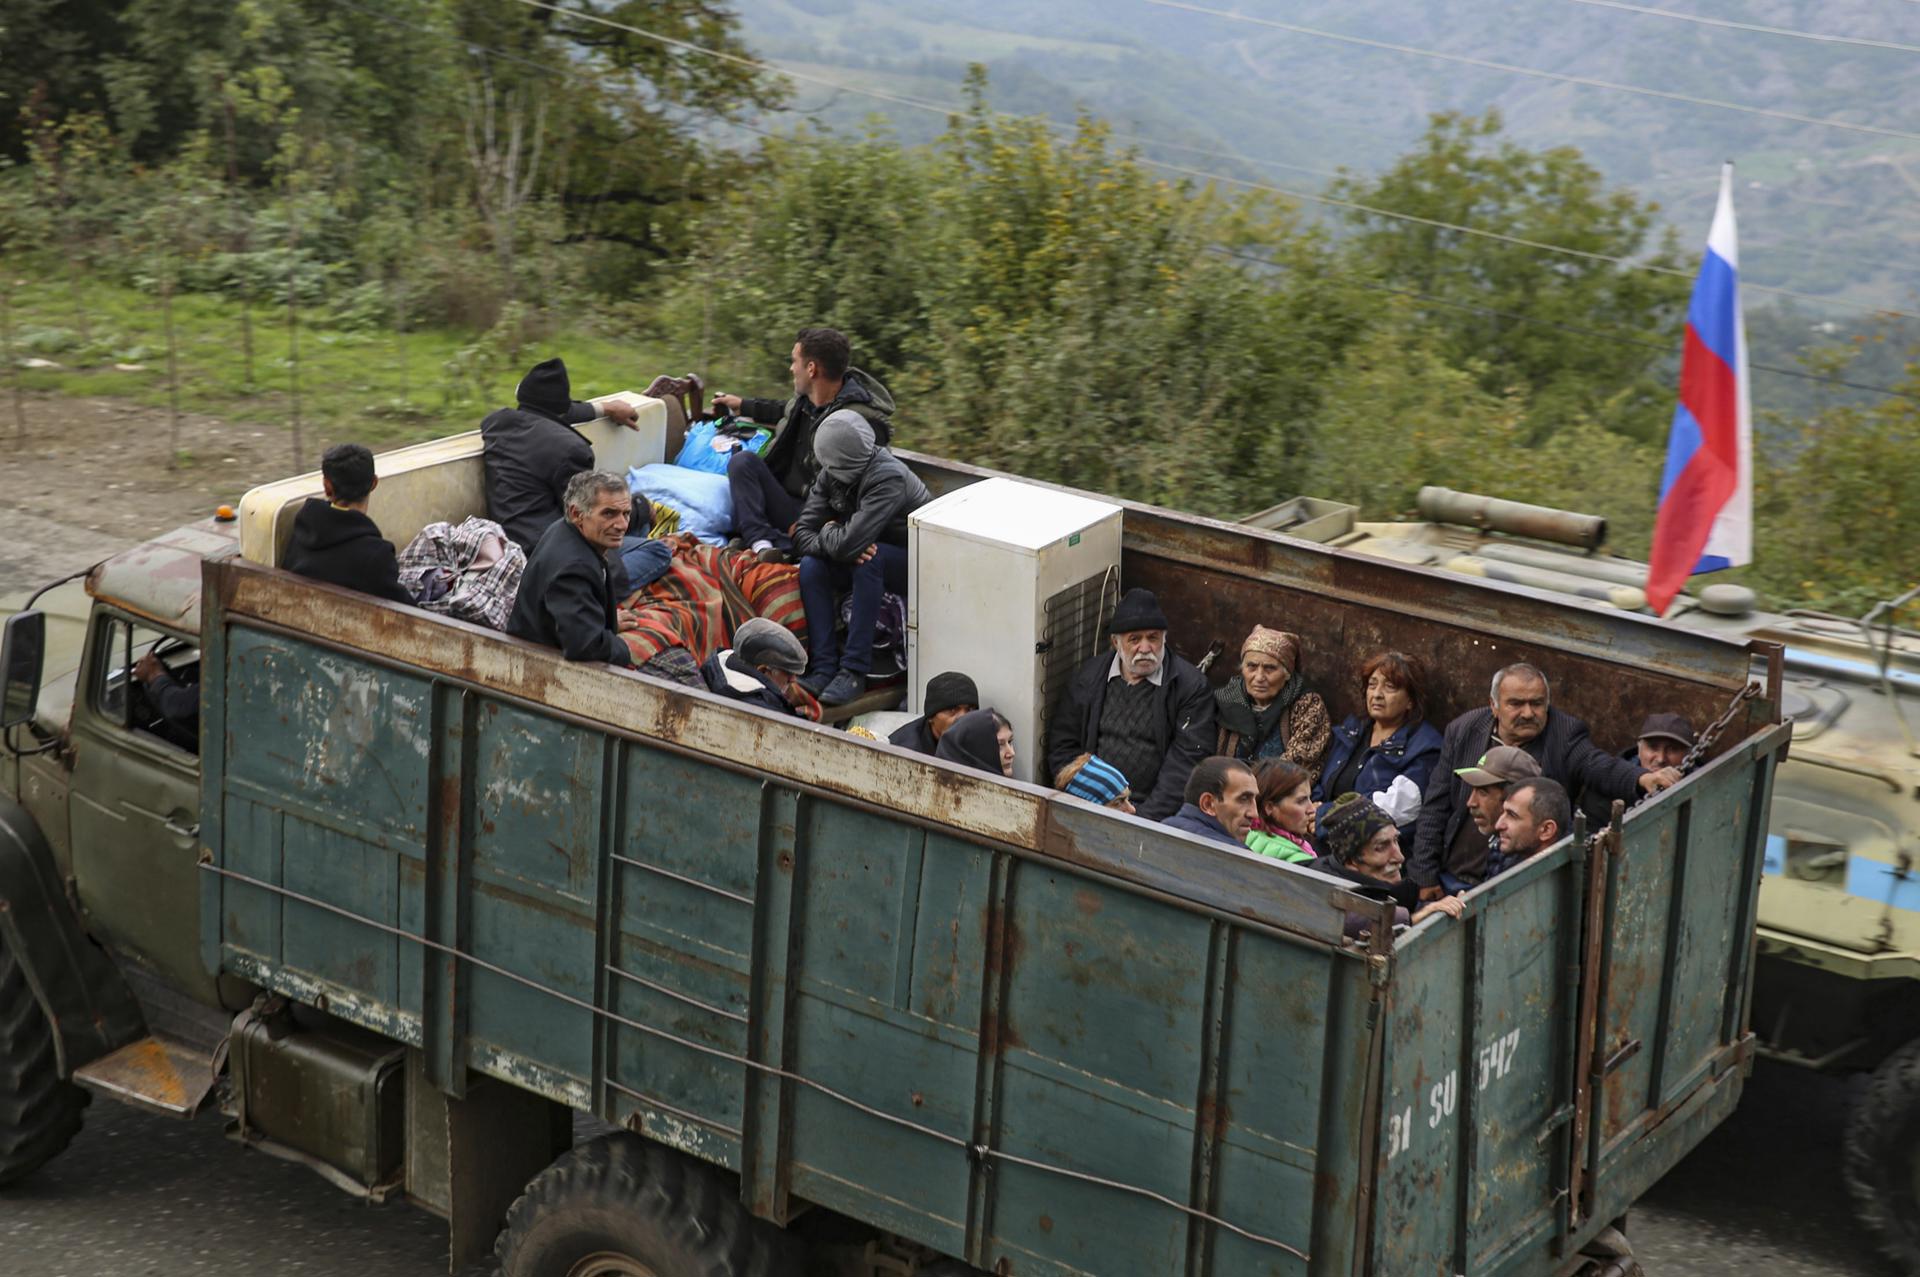 Asesora de la ONU sobre el genocidio dice que la situación en Nagorno Karabaj es alarmante